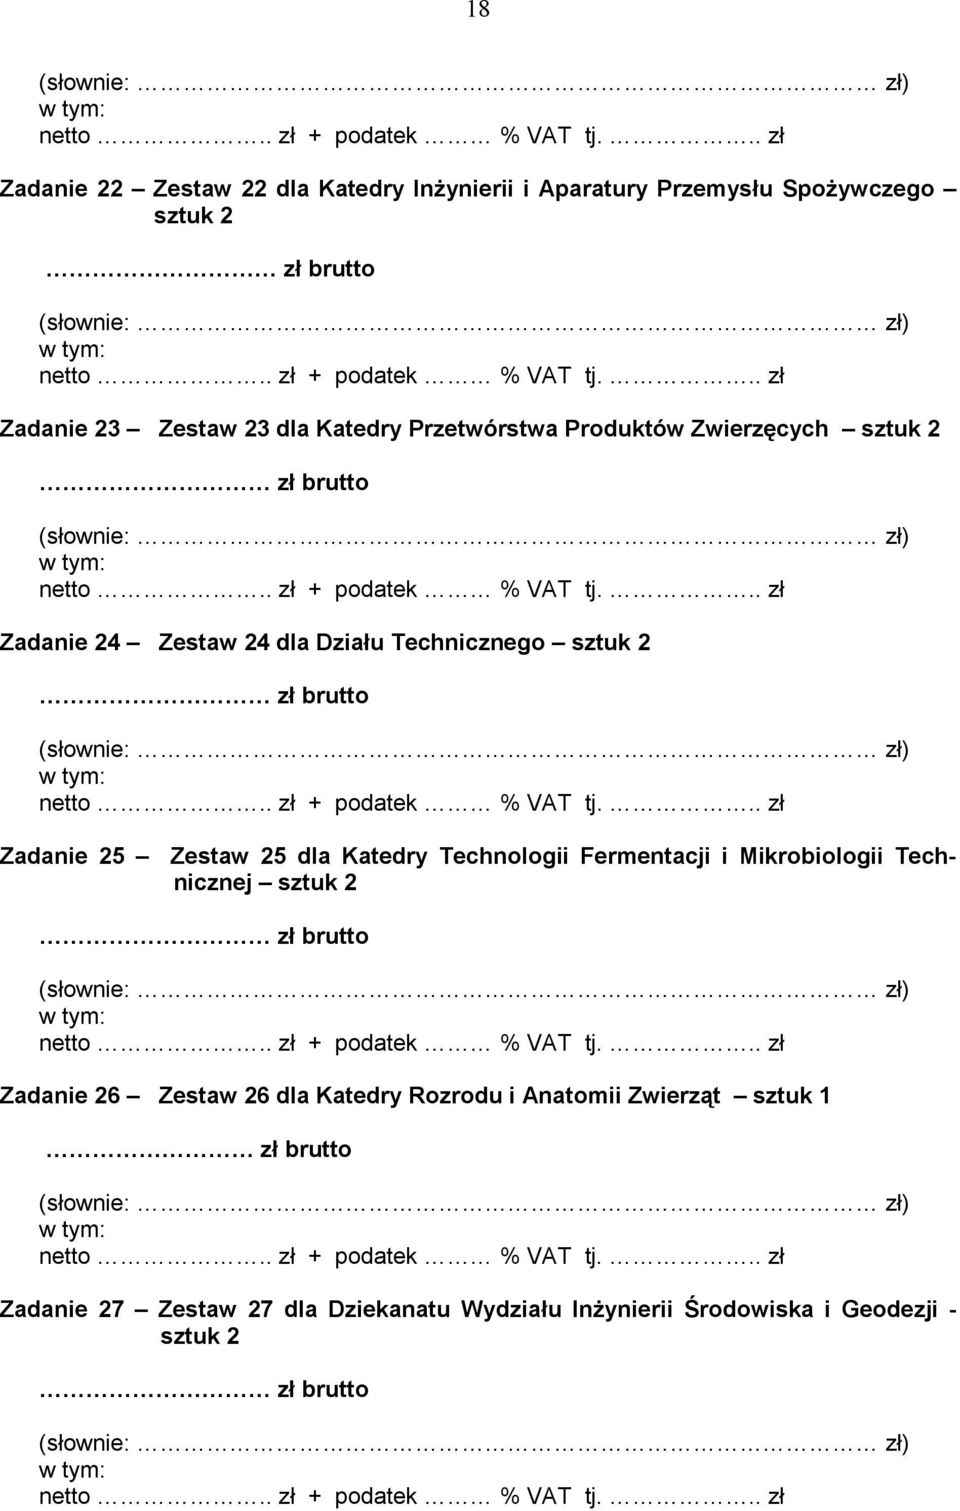 Zestaw 25 dla Katedry Technologii Fermentacji i Mikrobiologii Technicznej sztuk 2 Zadanie 26 Zestaw 26 dla Katedry